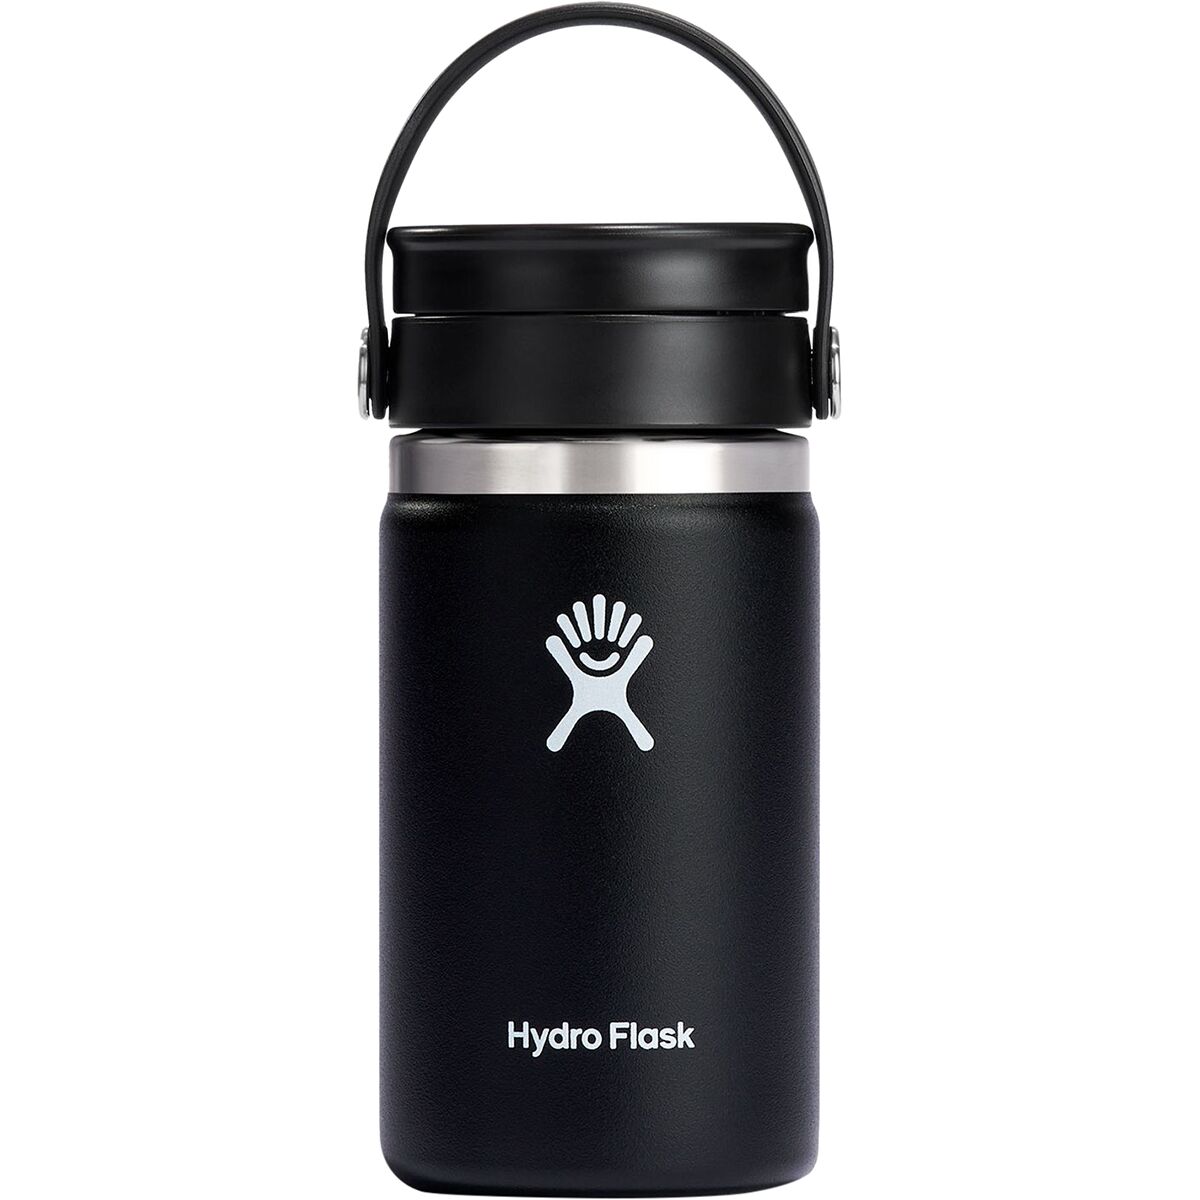 Hydro Flask 12oz Wide Mouth Flex Sip Coffee Mug